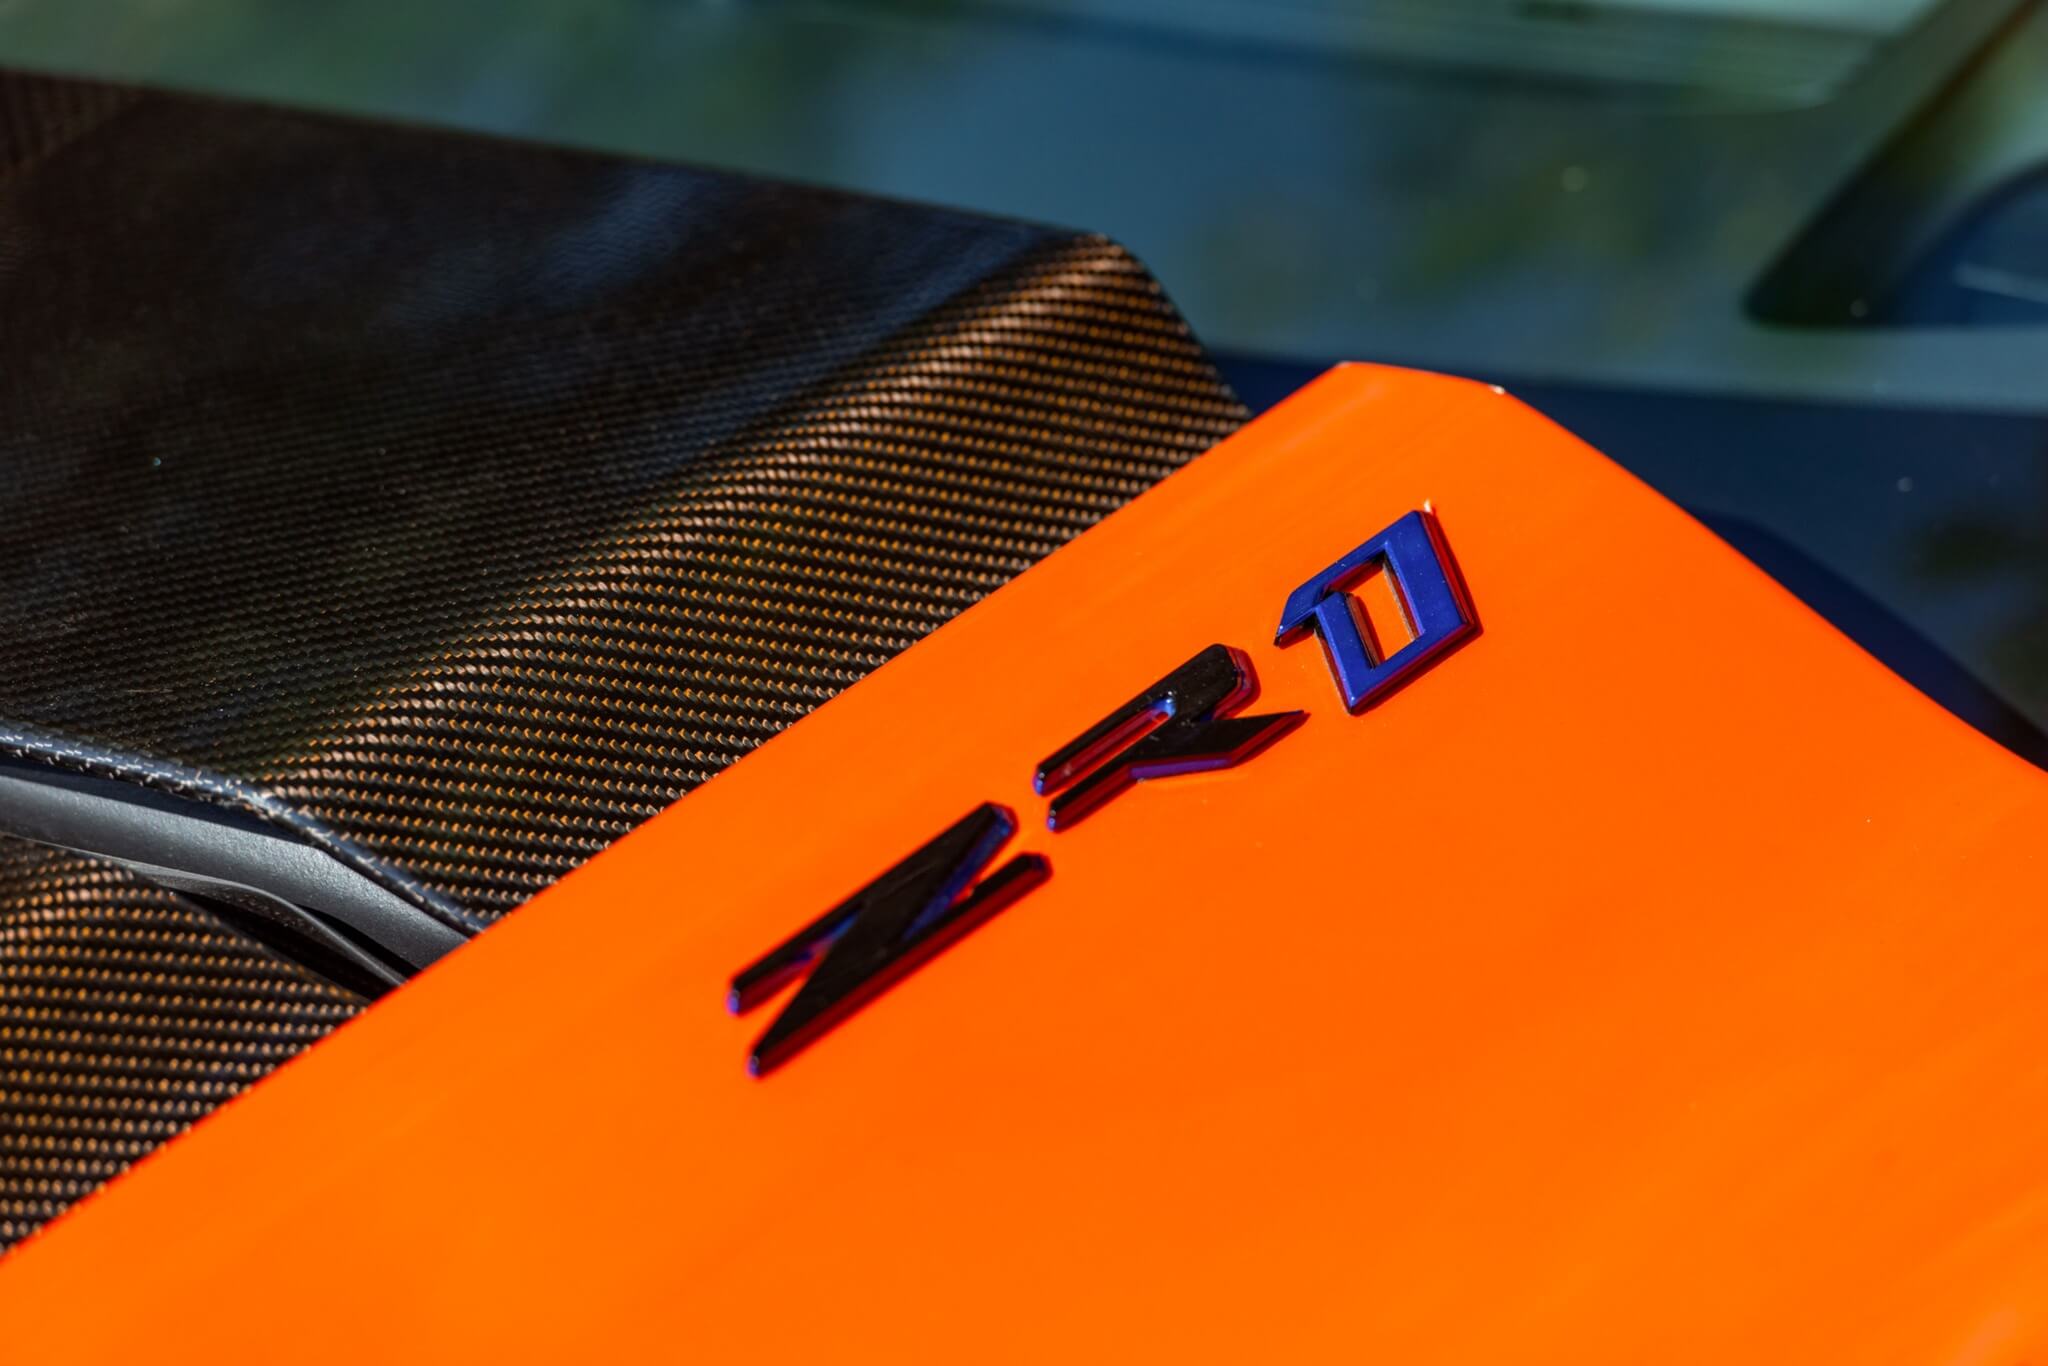 2019 Chevrolet Corvette ZR1 Sebring Orange Design Package